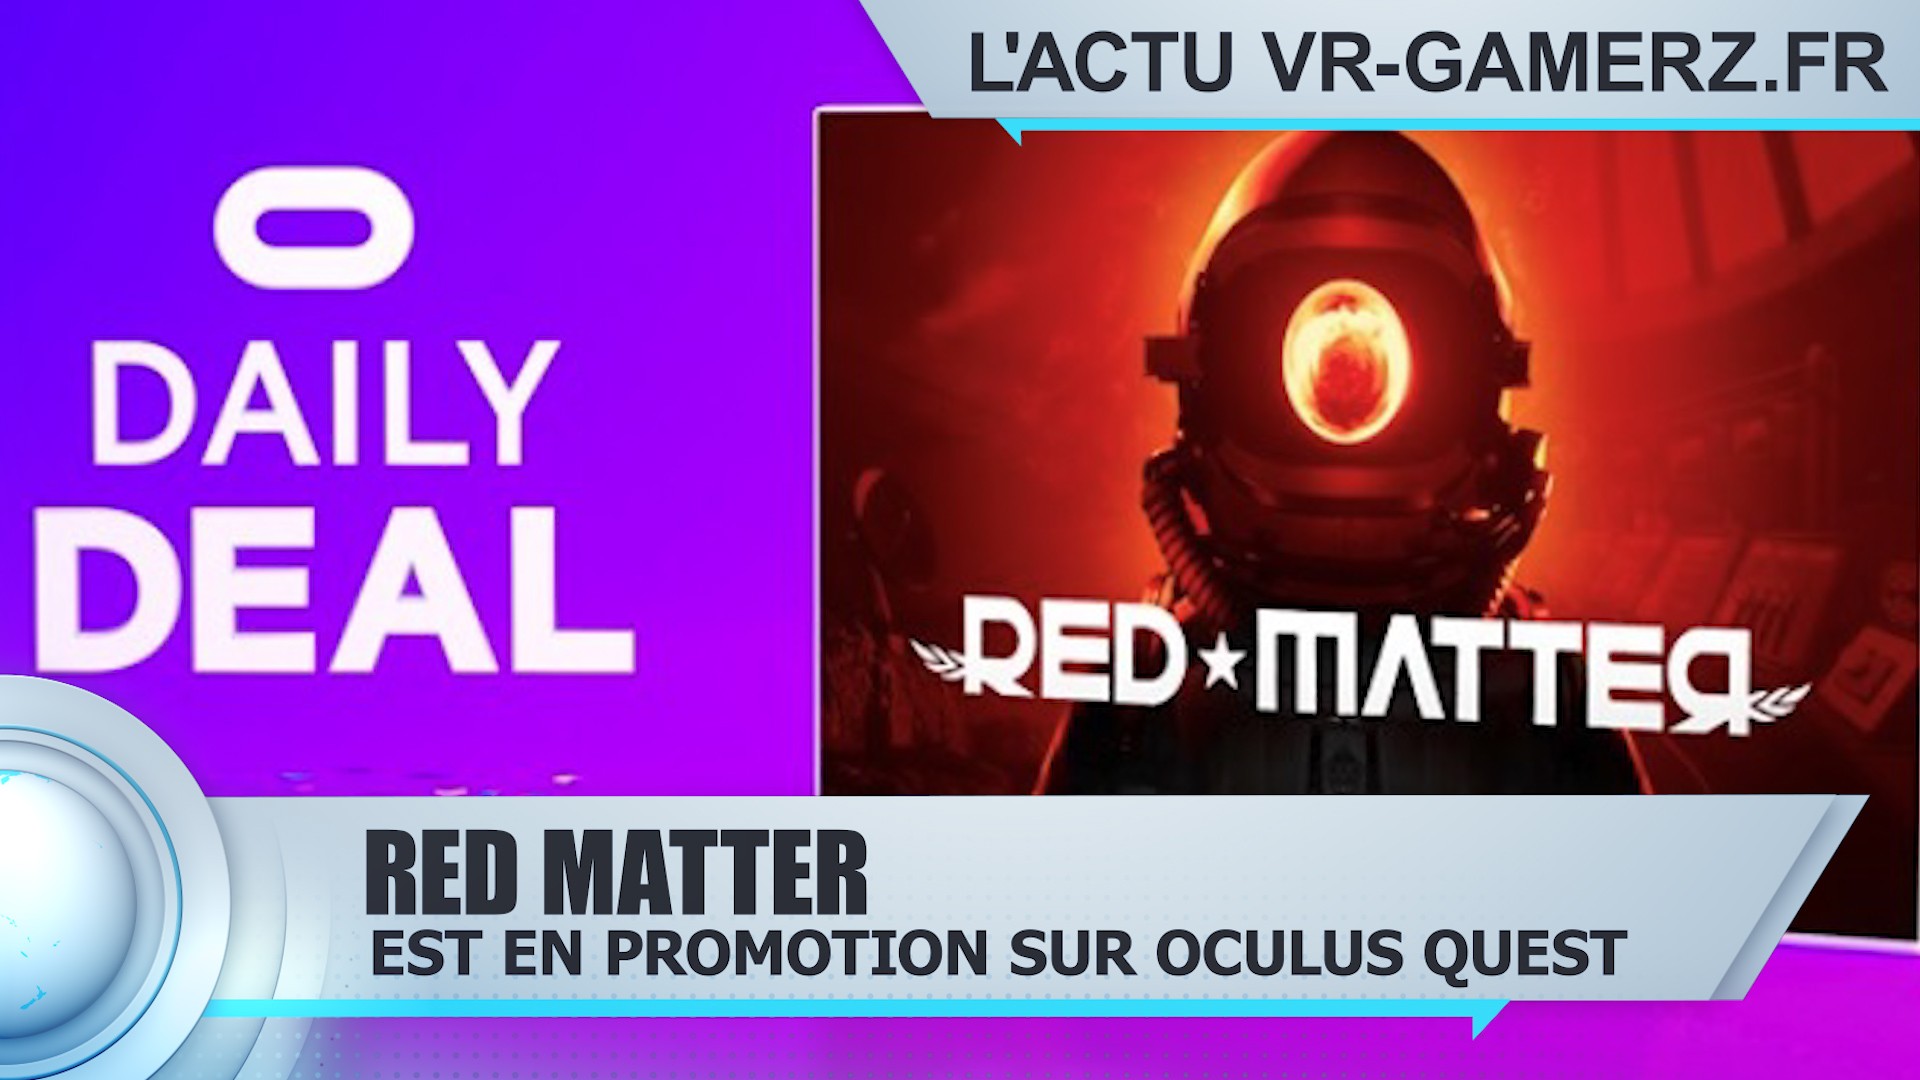 Red matter est en promotion sur Oculus quest